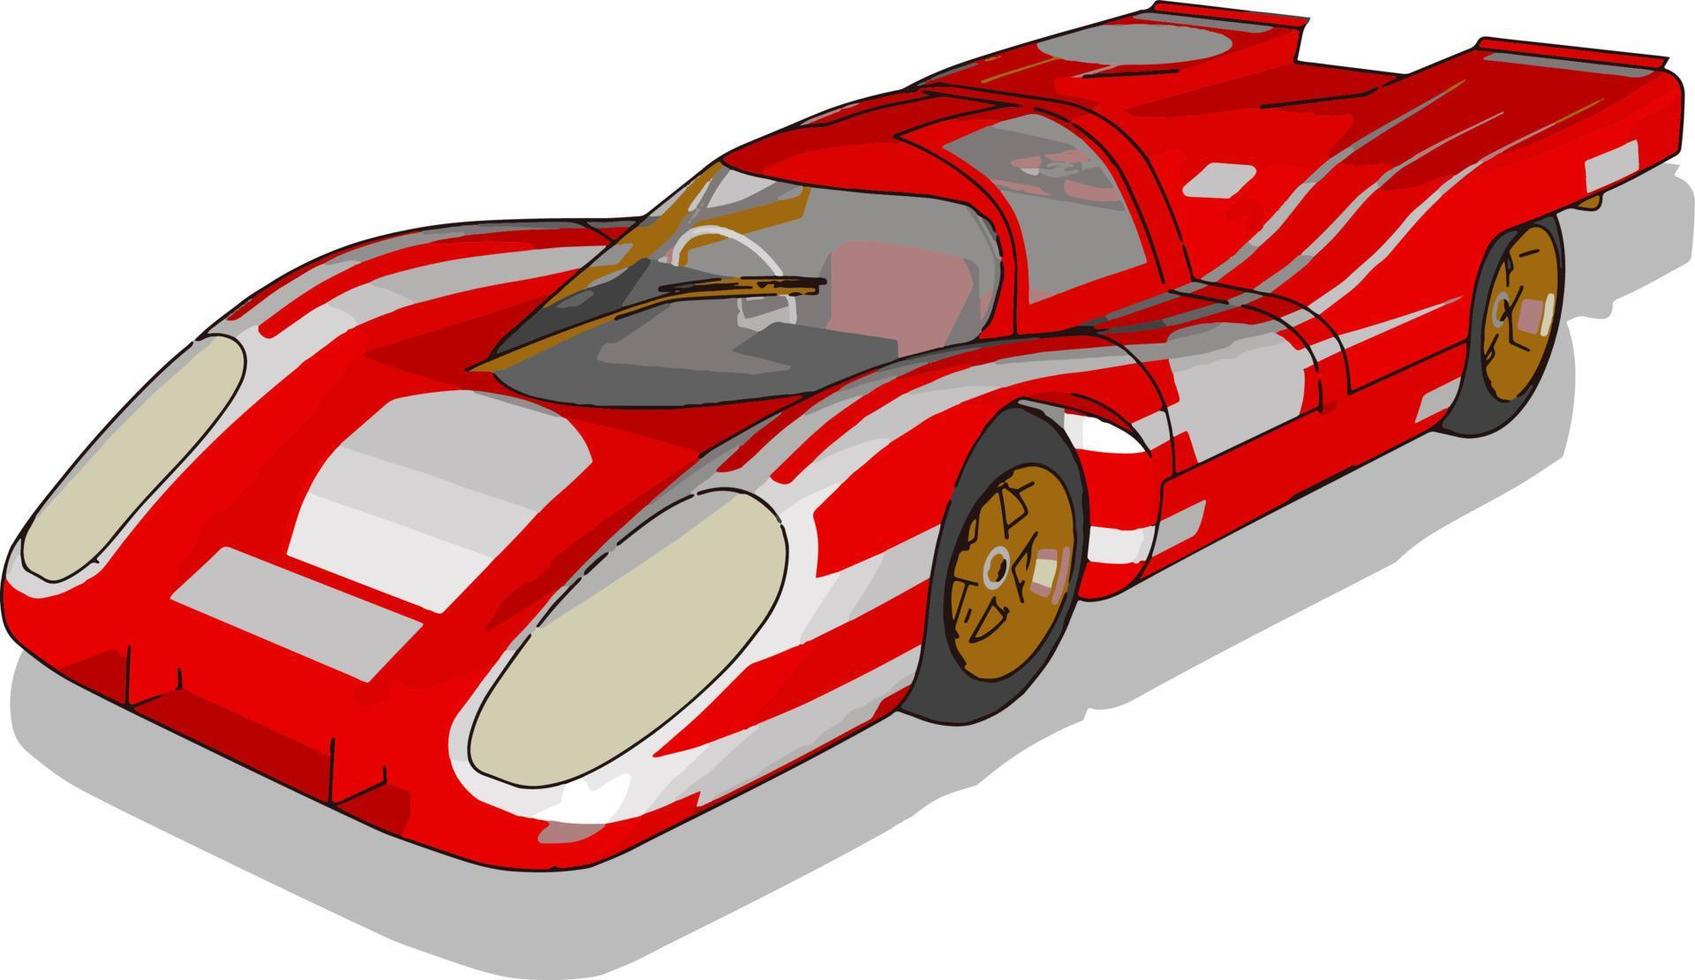 röd tävlings bil, illustration, vektor på vit bakgrund.